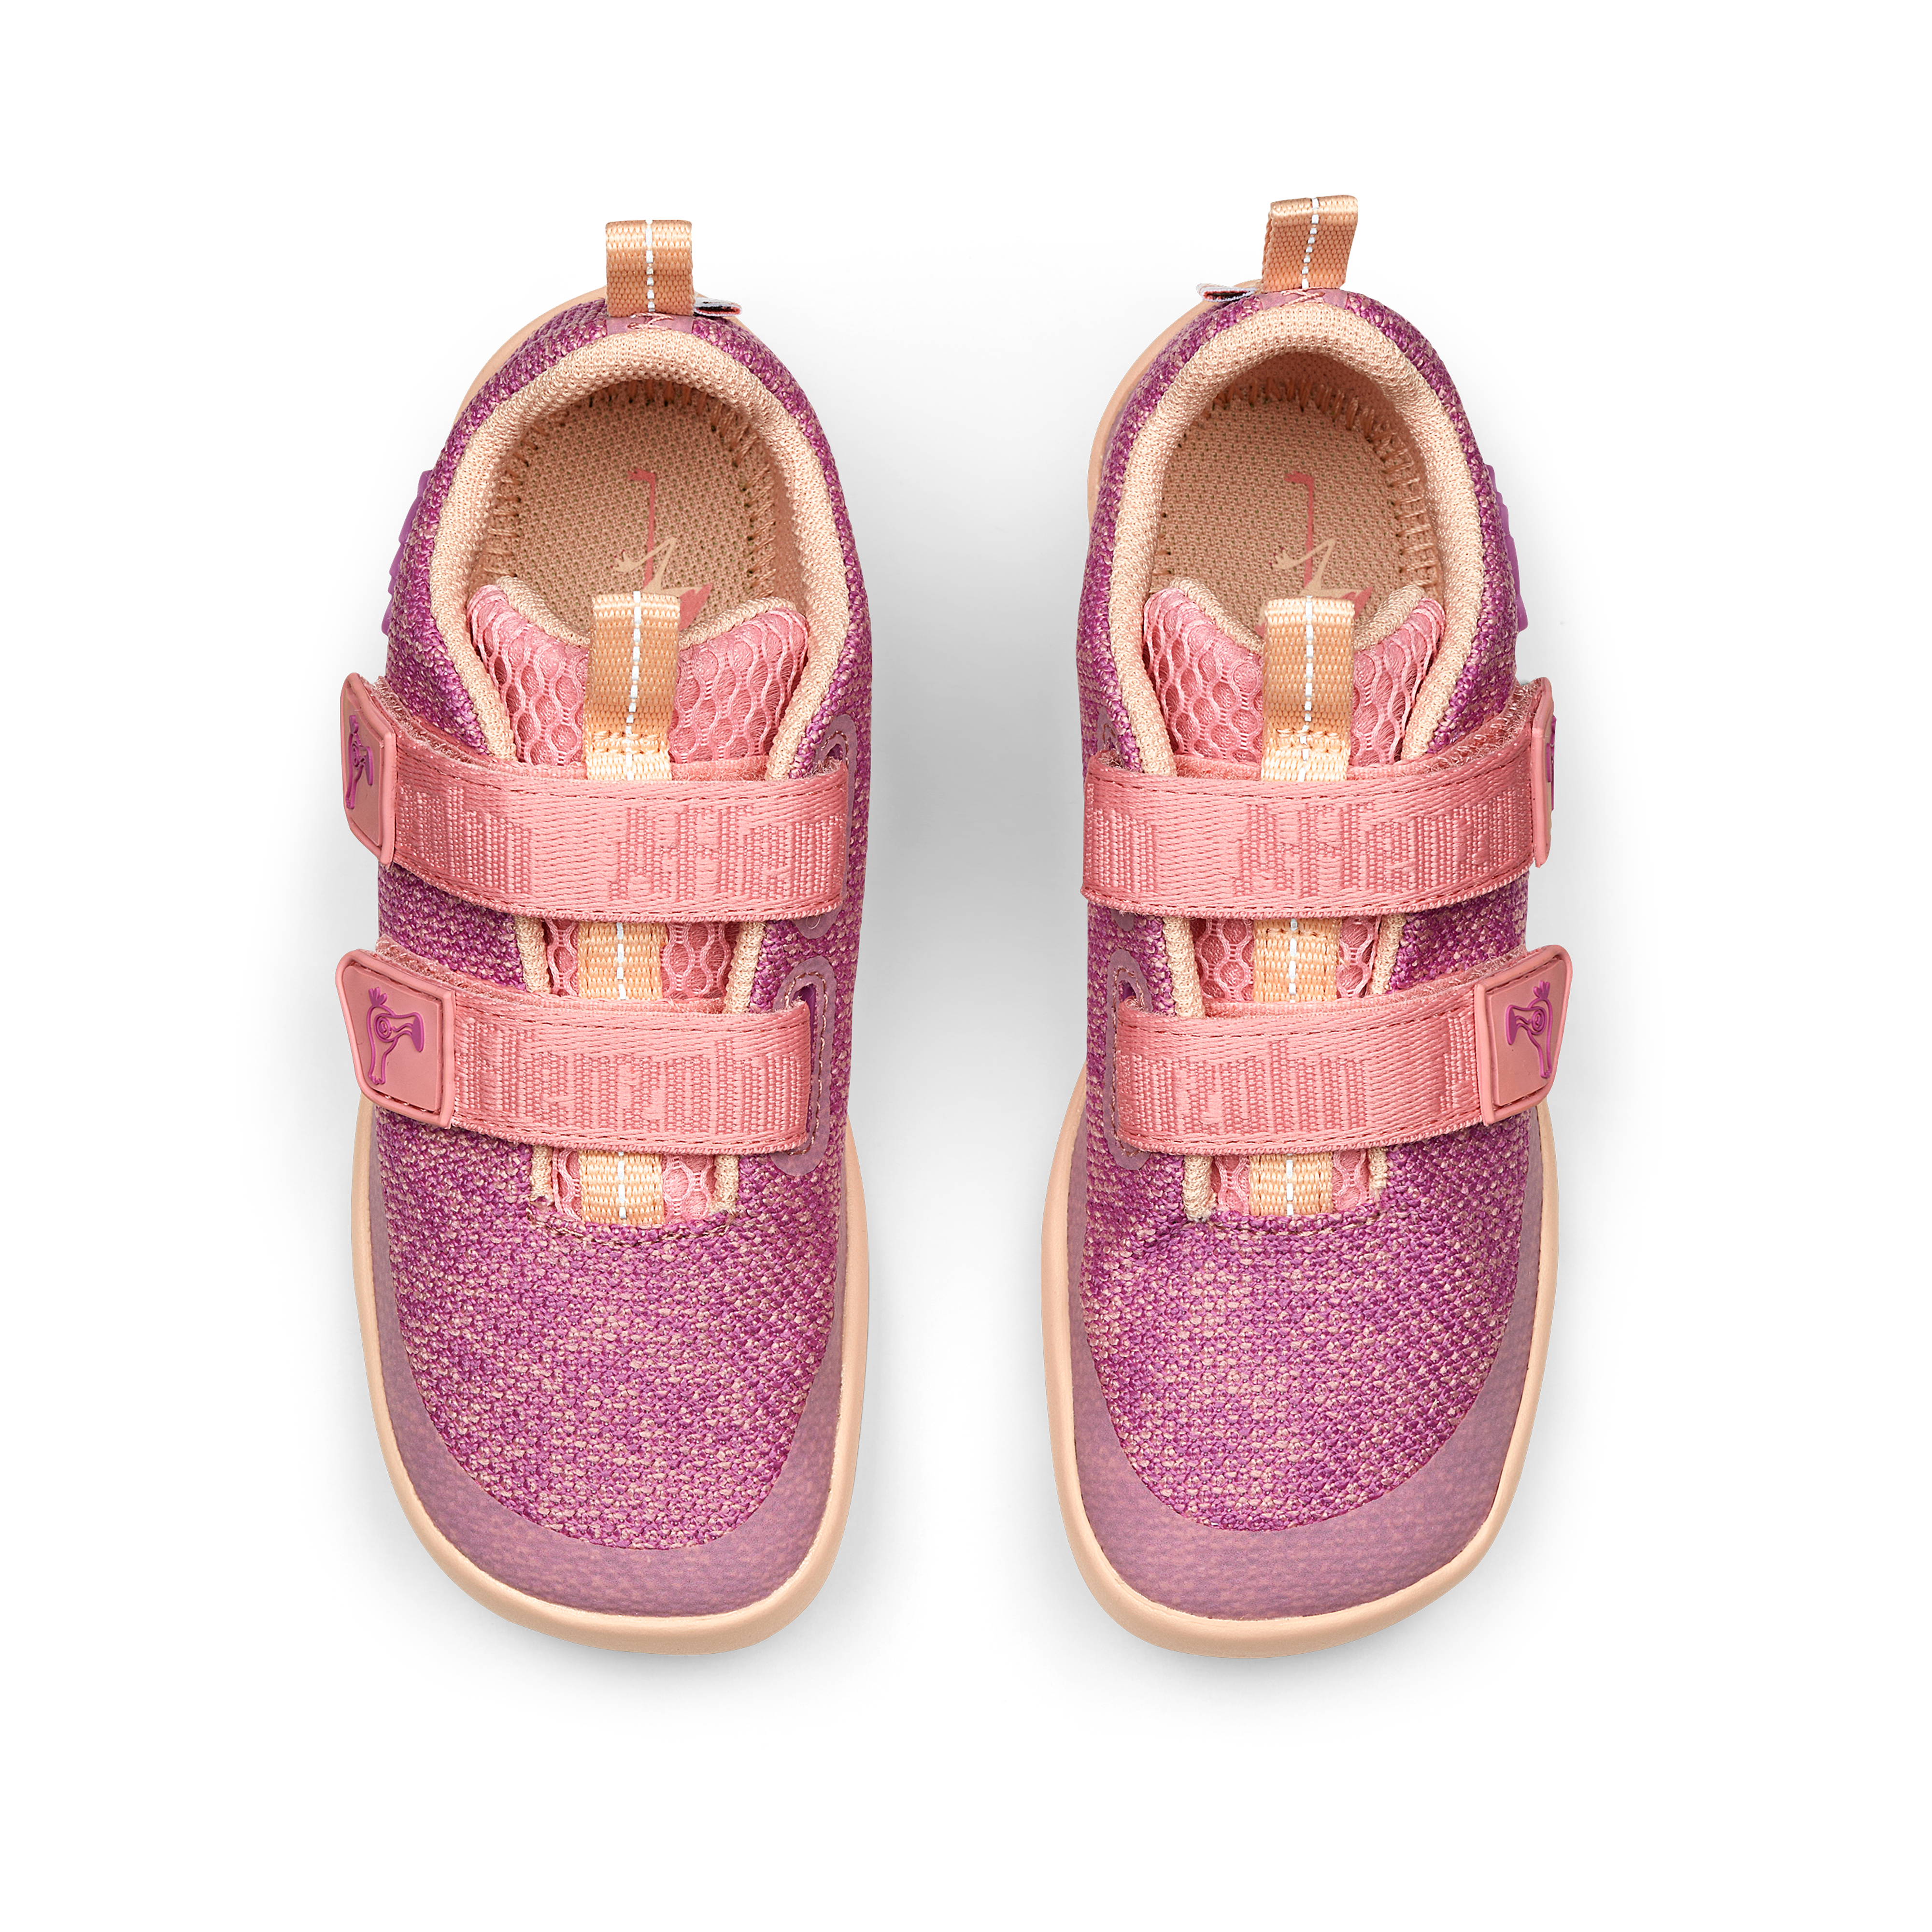 Affenzahn Knit Happy barfods sneakers til børn i farven flamingo, top